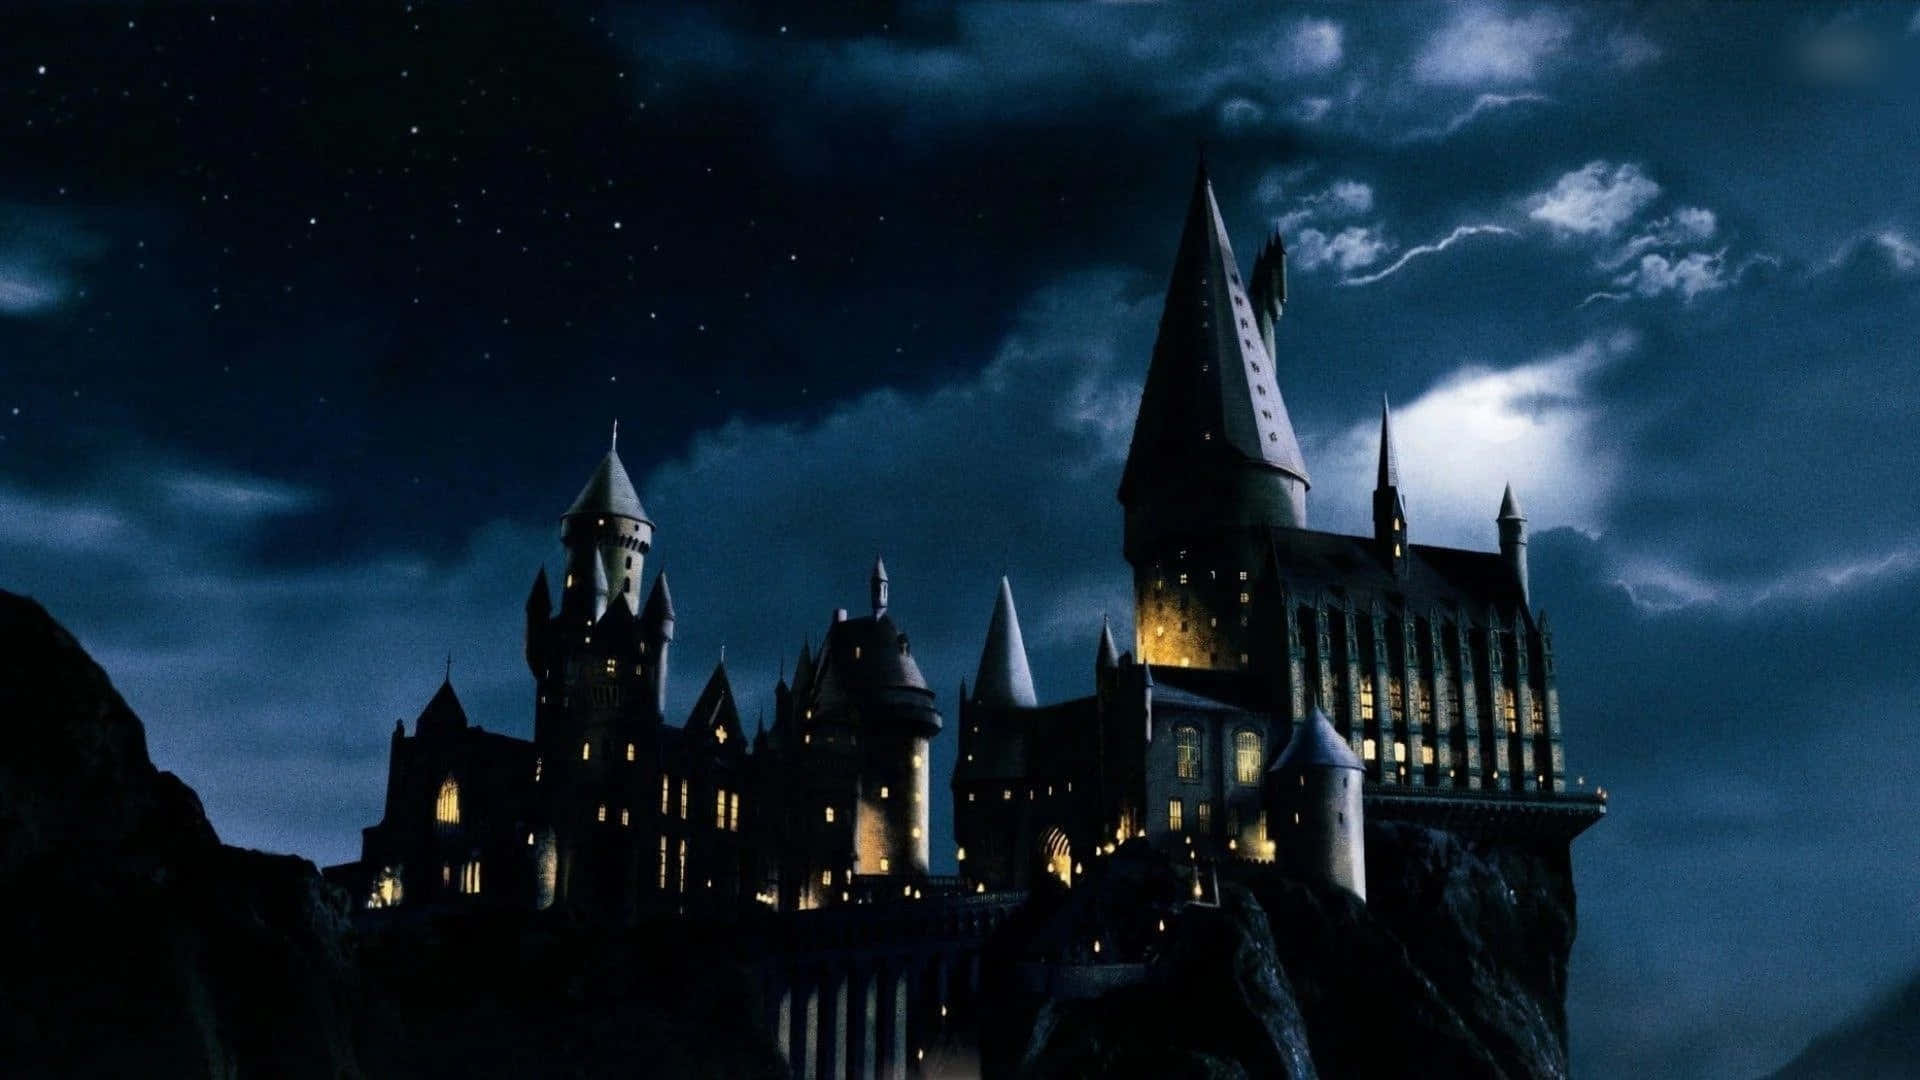 The world of magic at Hogwarts